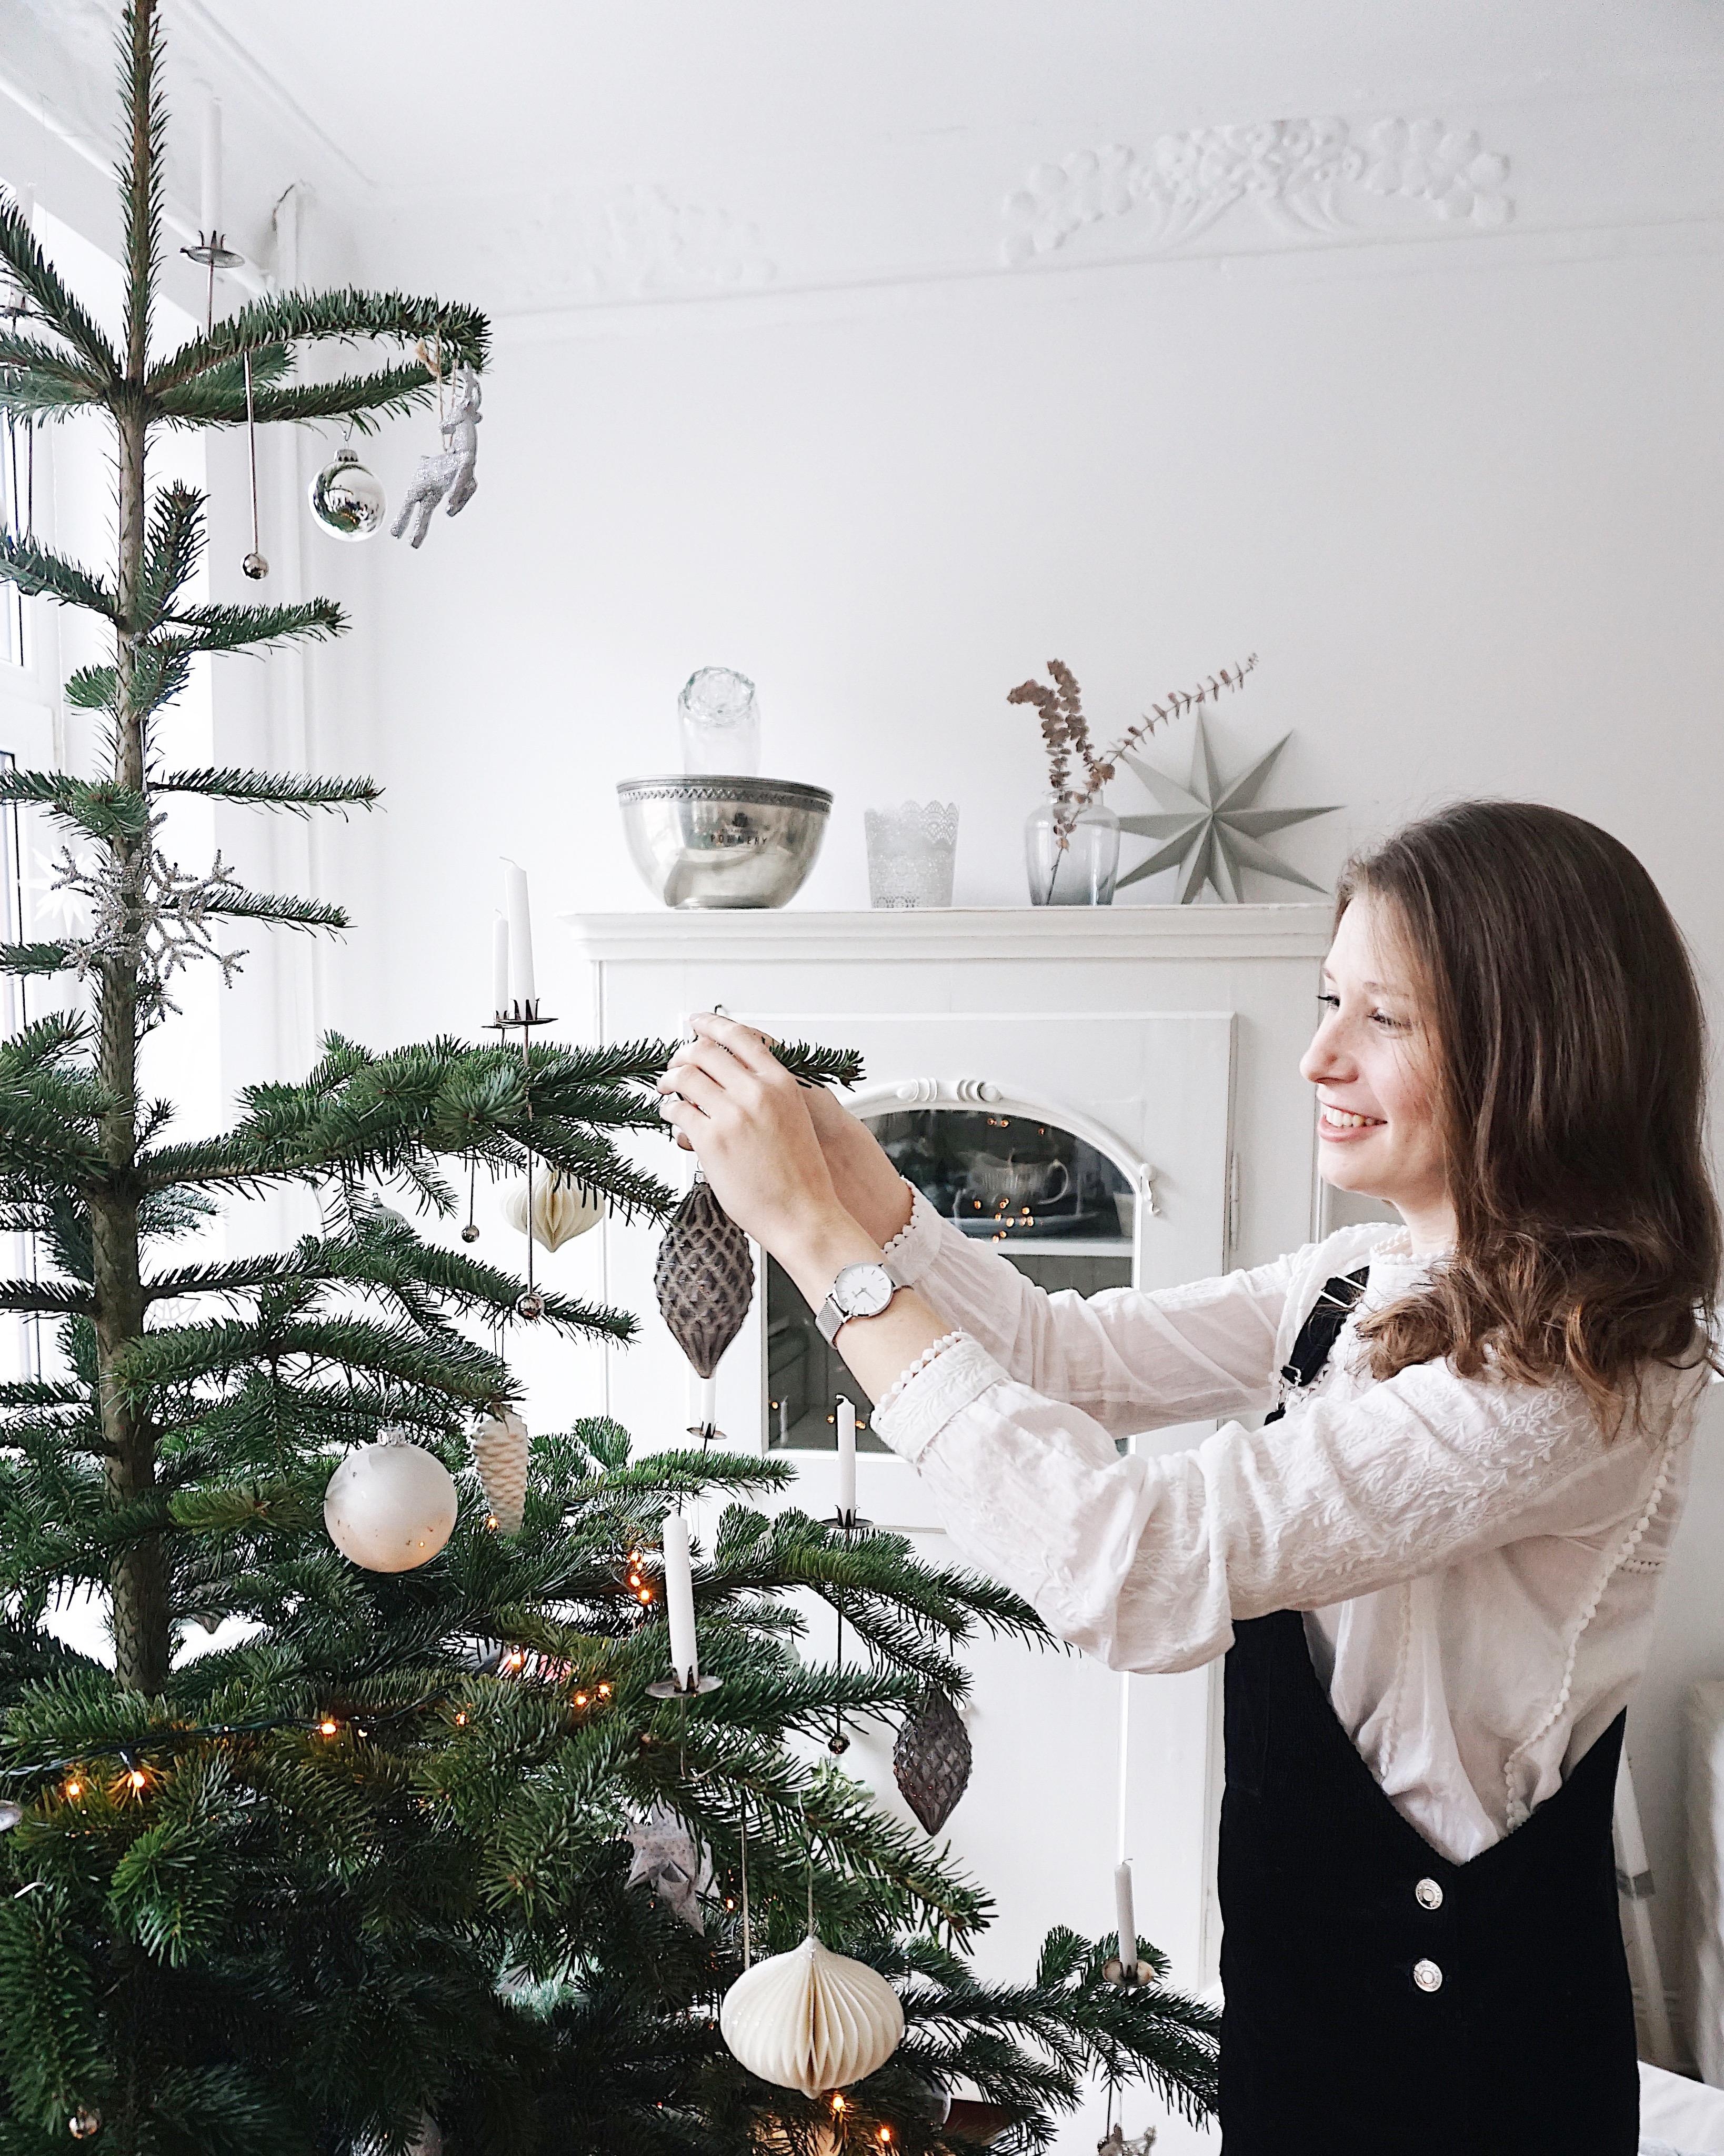 Der Baum ist geschmückt, Weihnachten kann kommen⭐️🎄 
#ohtannenbaum #couchliebt #altbauliebe #tannenbaum #weihnachten 